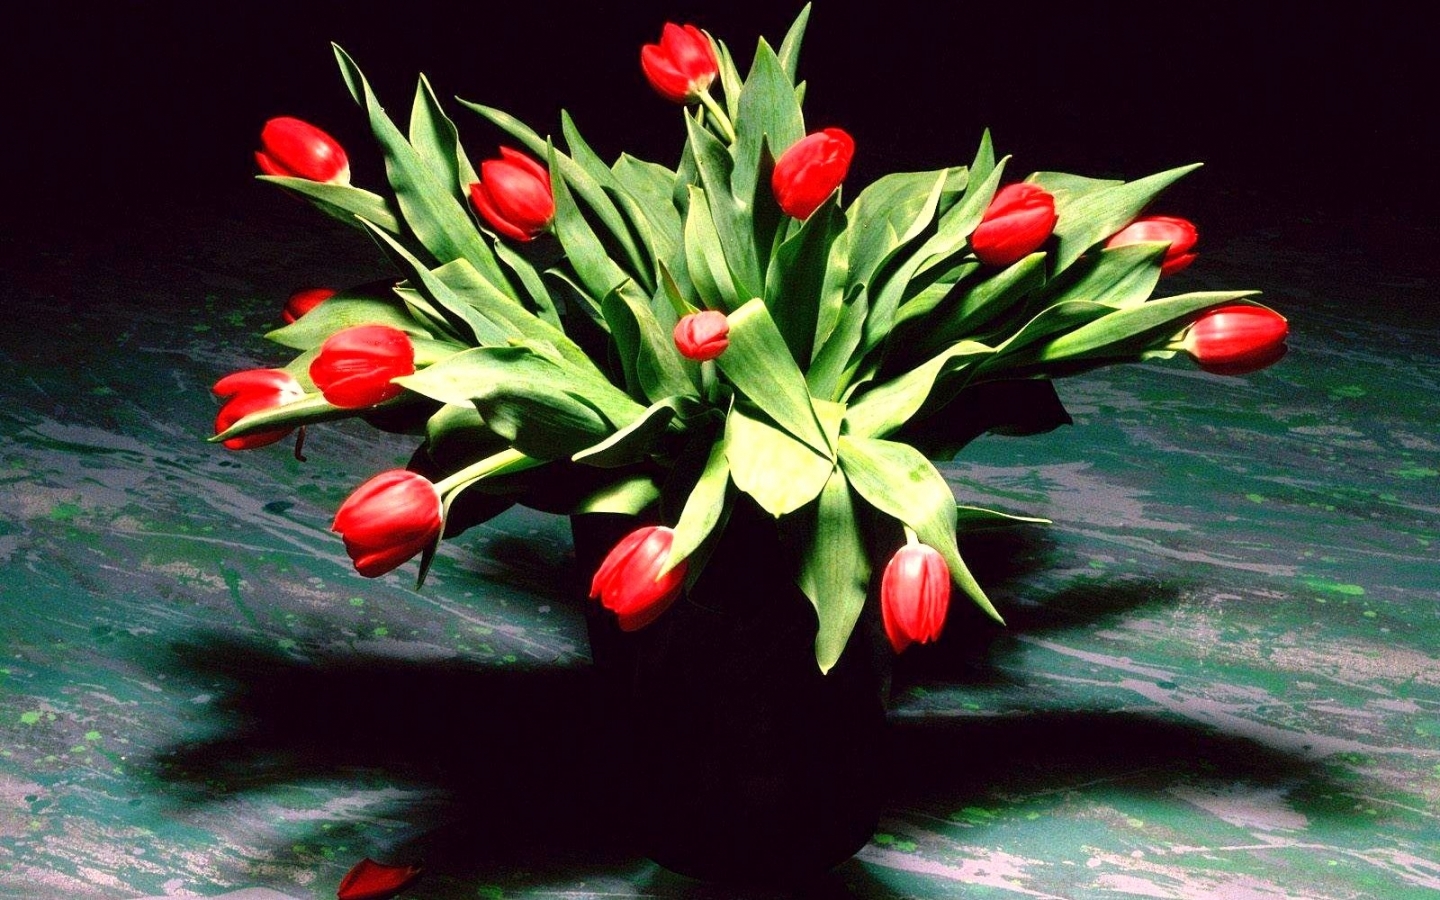 Скачать картинку Цветы, Растения, Тюльпаны в телефон бесплатно.